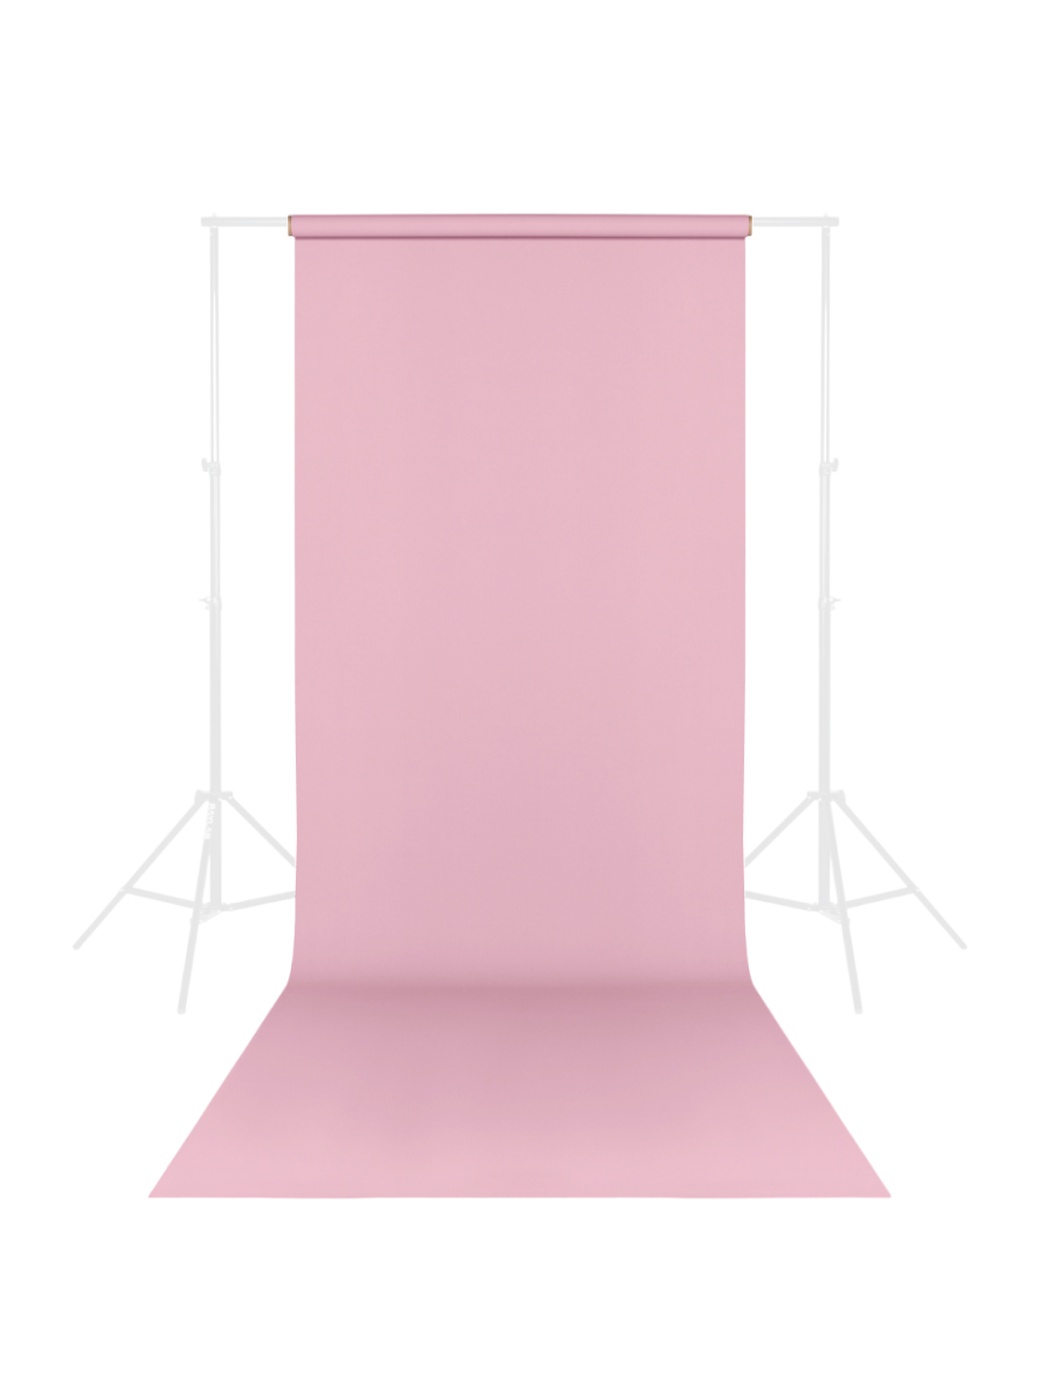 Фон бумажный Raylab 012 Light Pink Нежно-розовый 1.35x6м фото